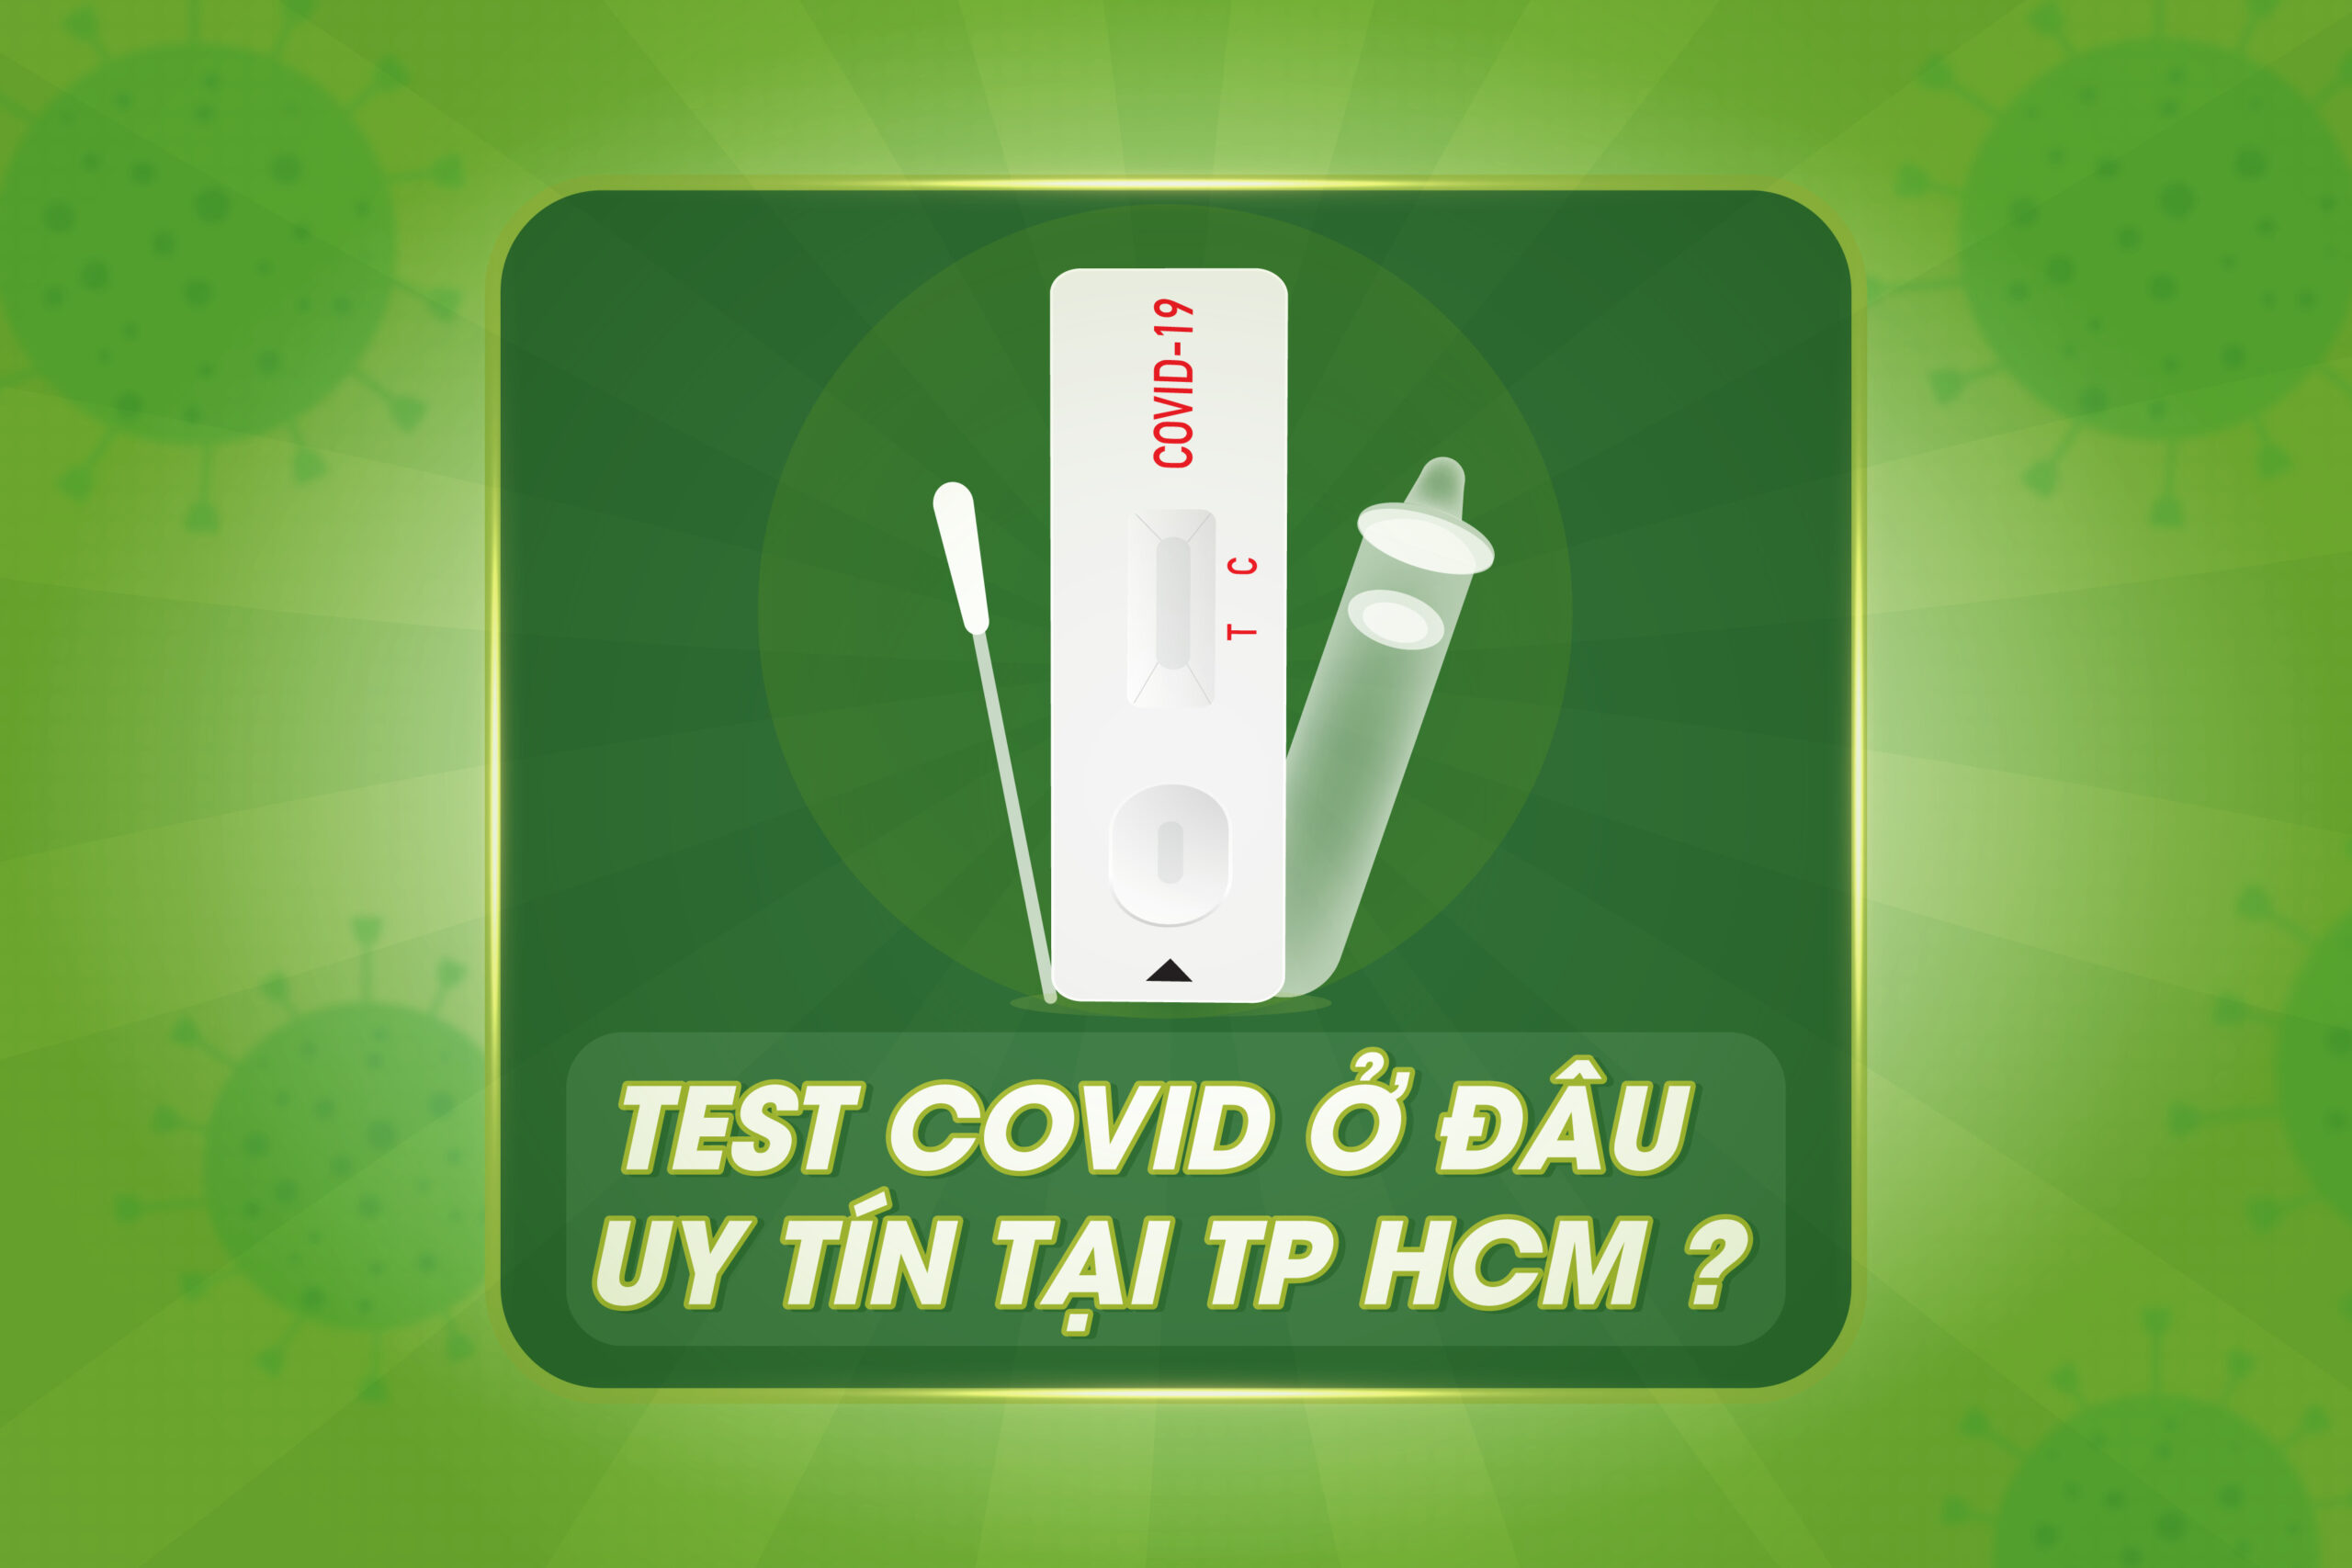 Test Covid ở cơ sở nào uy tín tại TP HCM ?